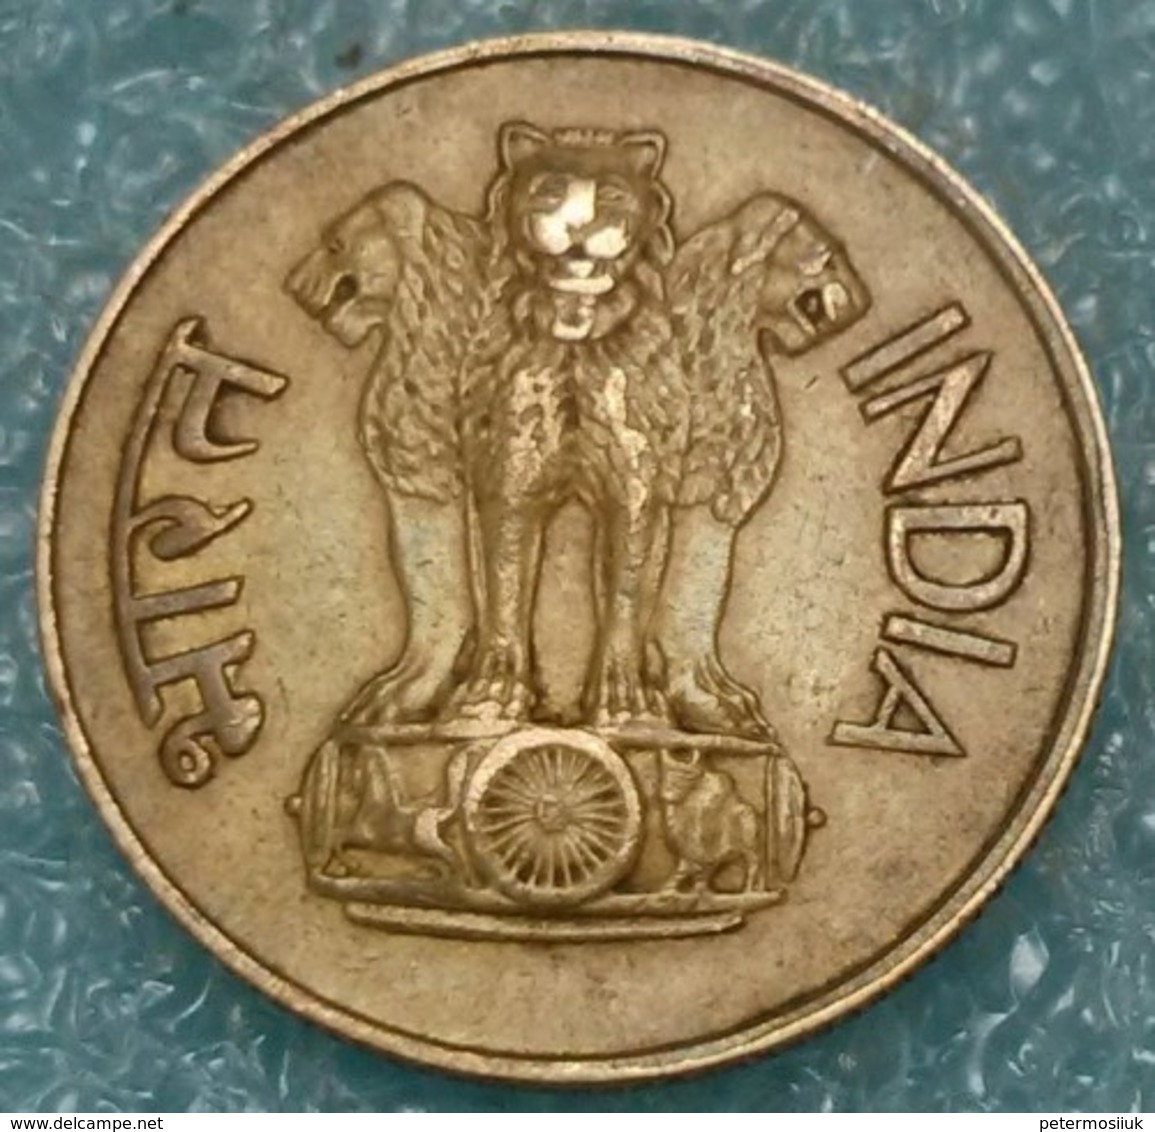 India 20 Paise, 1968 Mintmark "♦" - Bombay 4353 - India